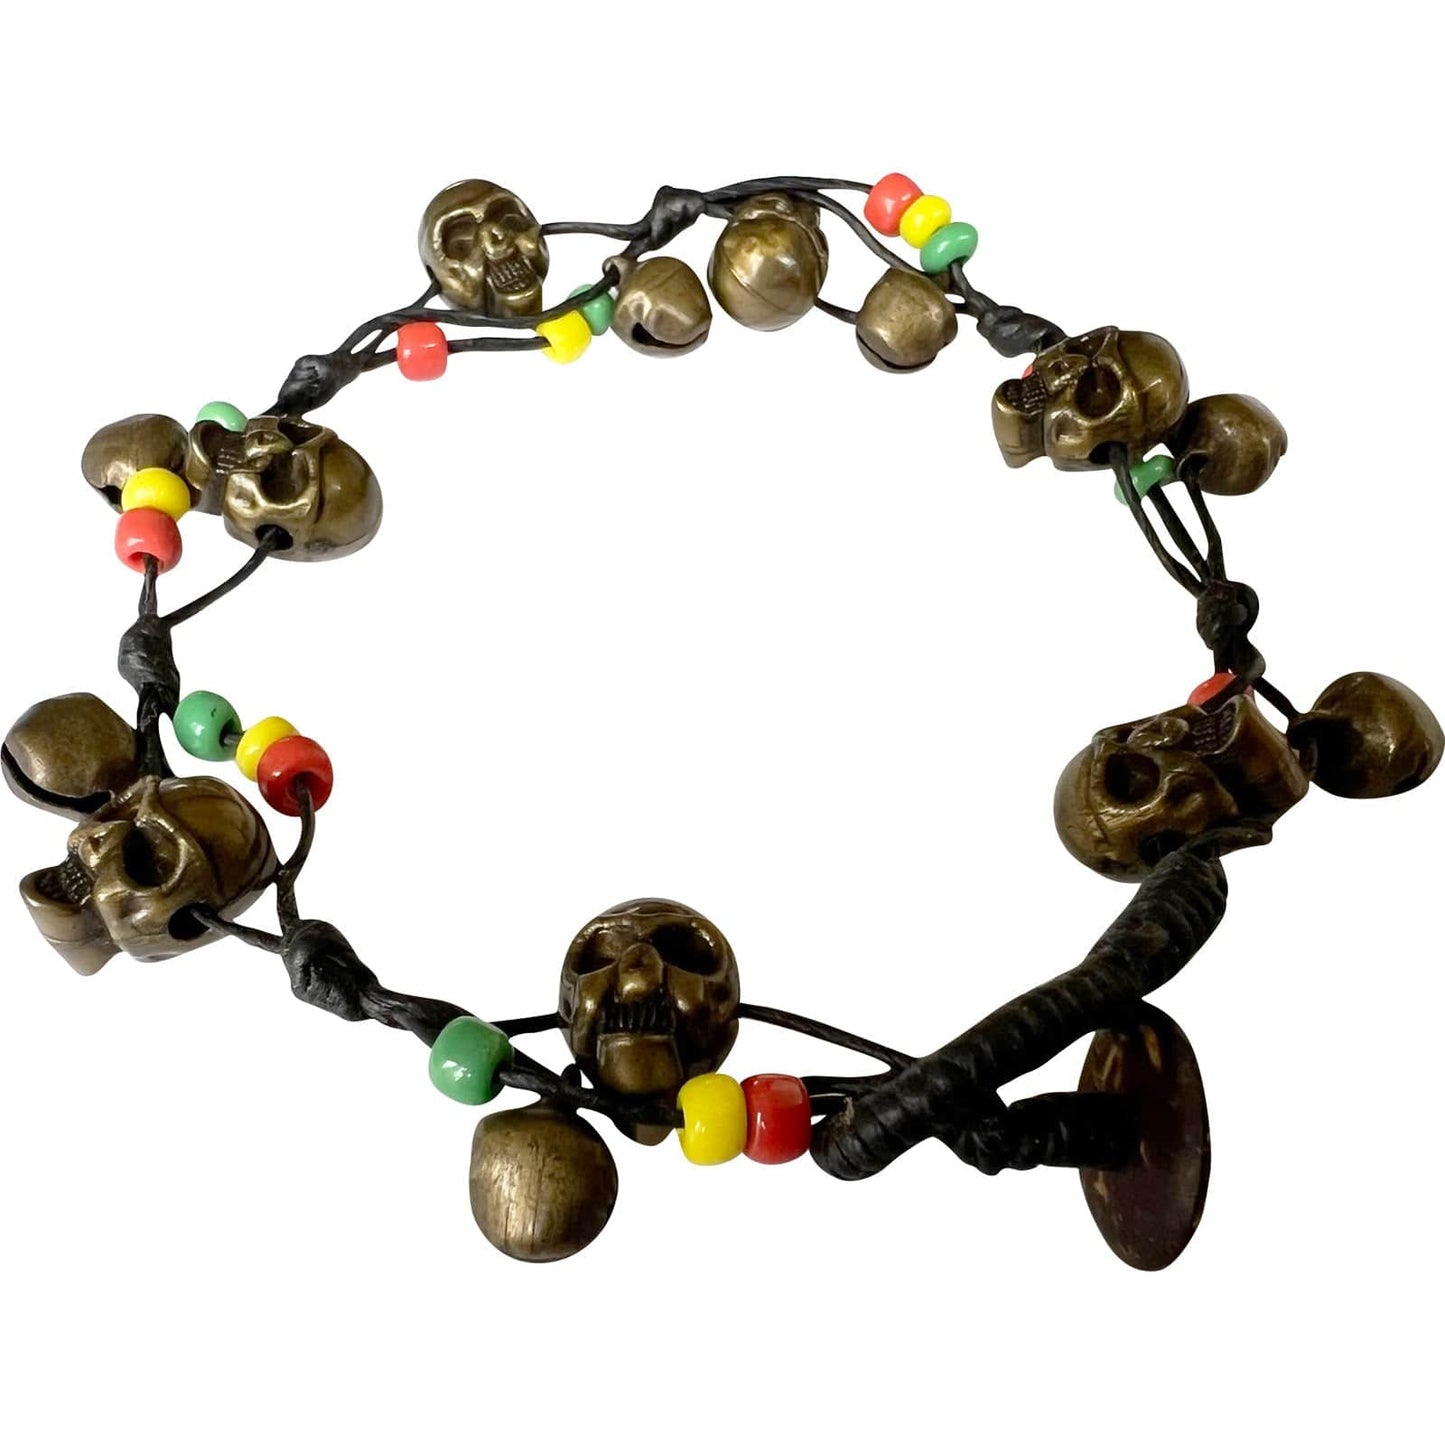 Skull Beads Anklet Black Foot Chain Ankle Bracelet Mens Womens Girls Jewellery